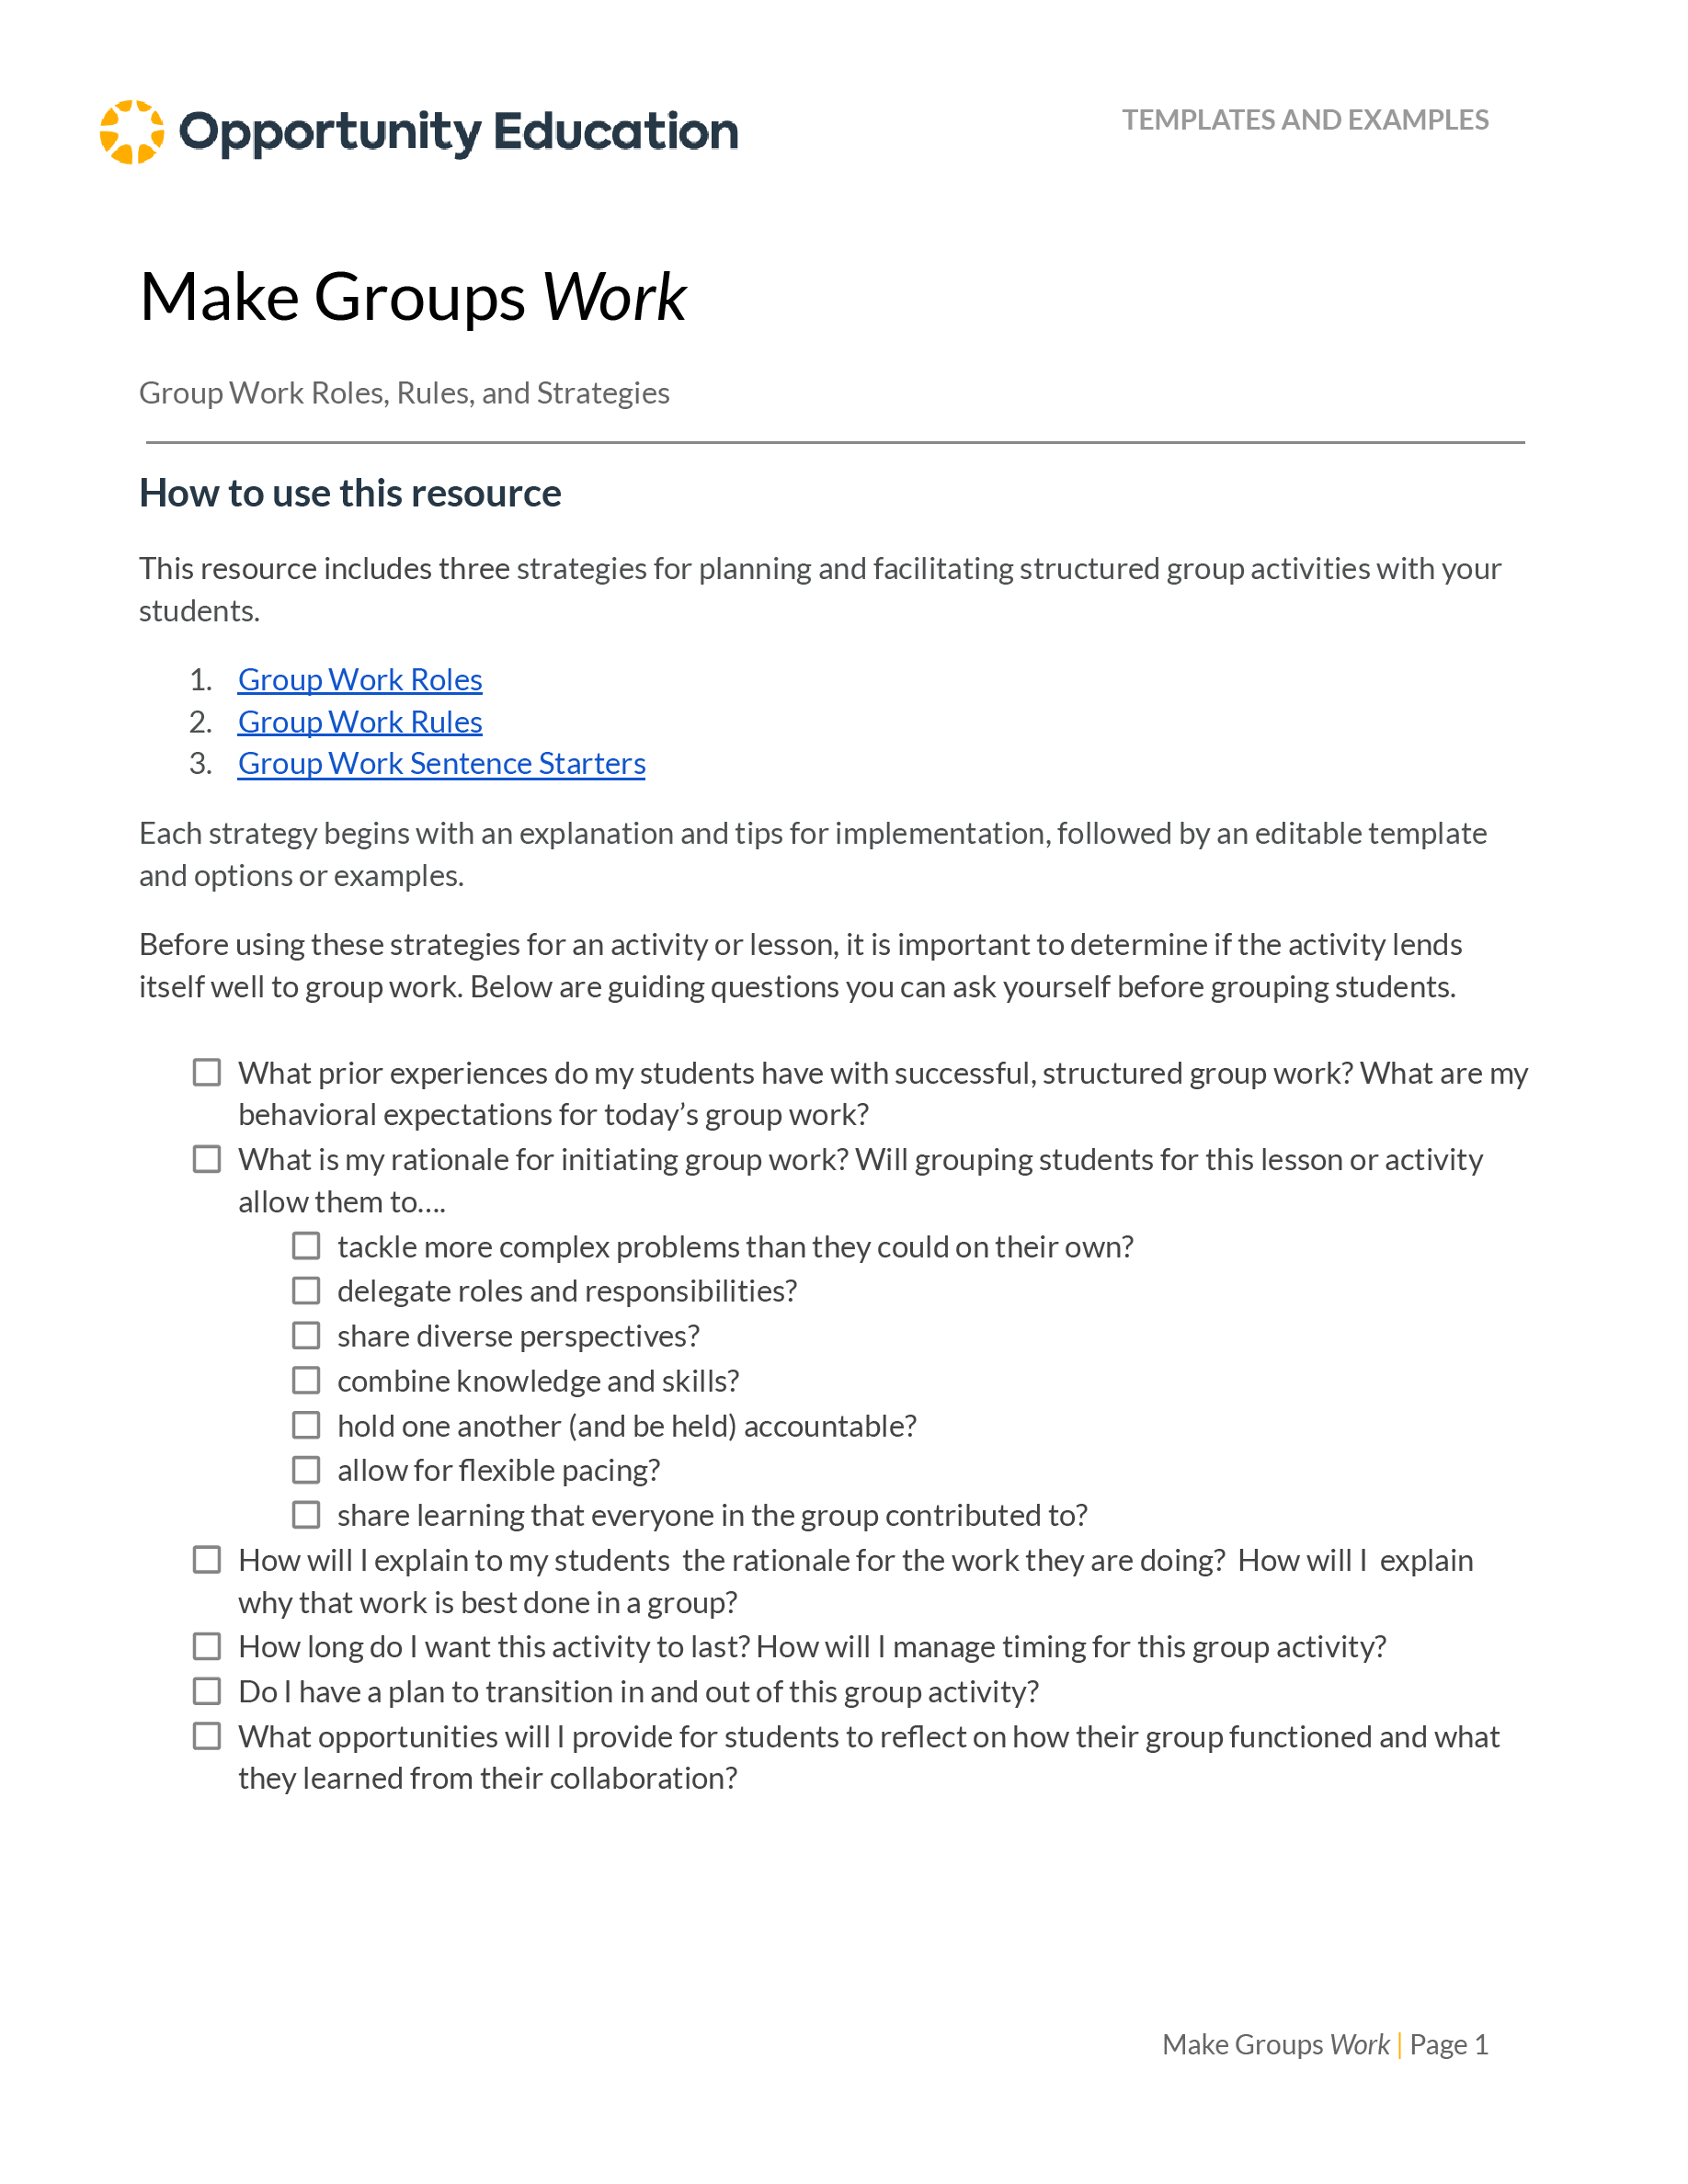 Make Groups Work